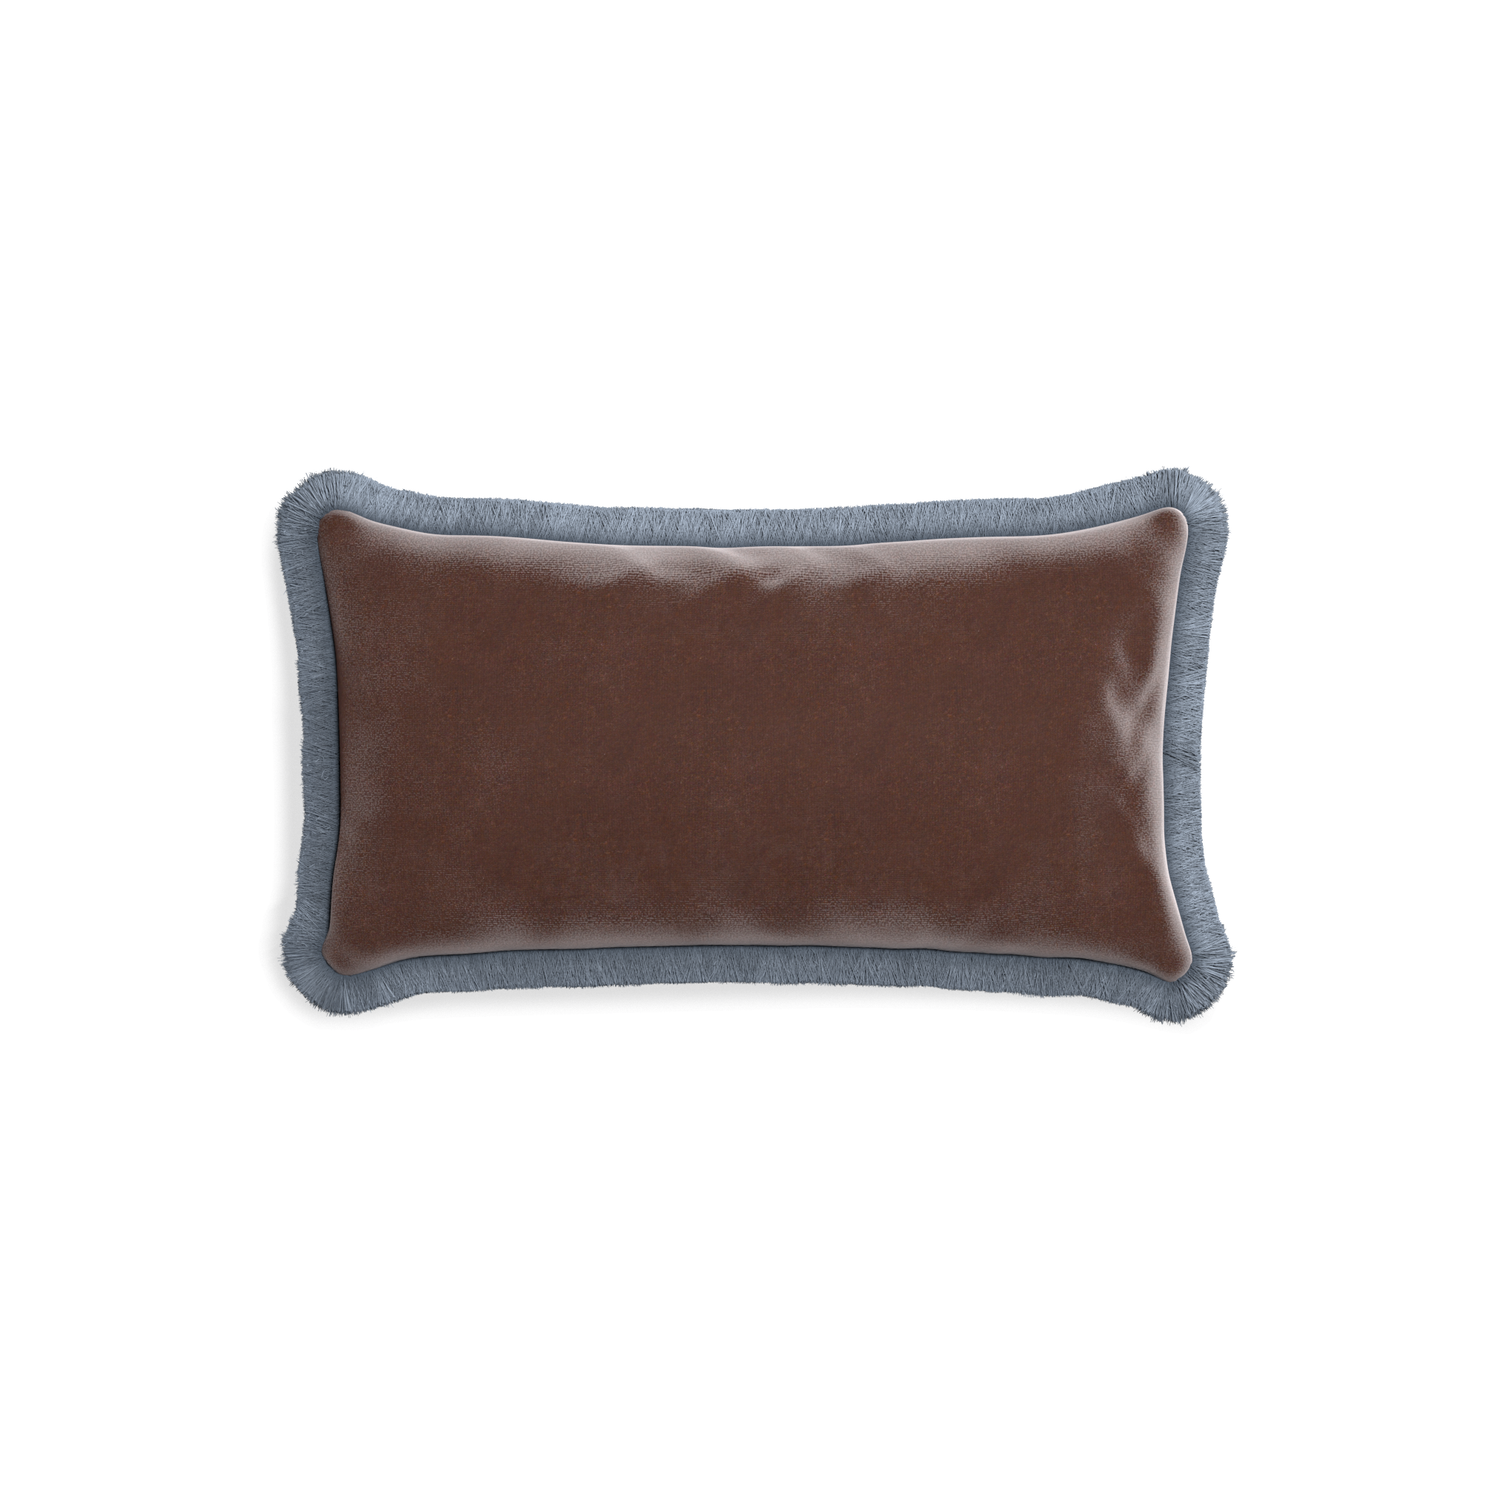 rectangle brown velvet pillow with sky blue fringe